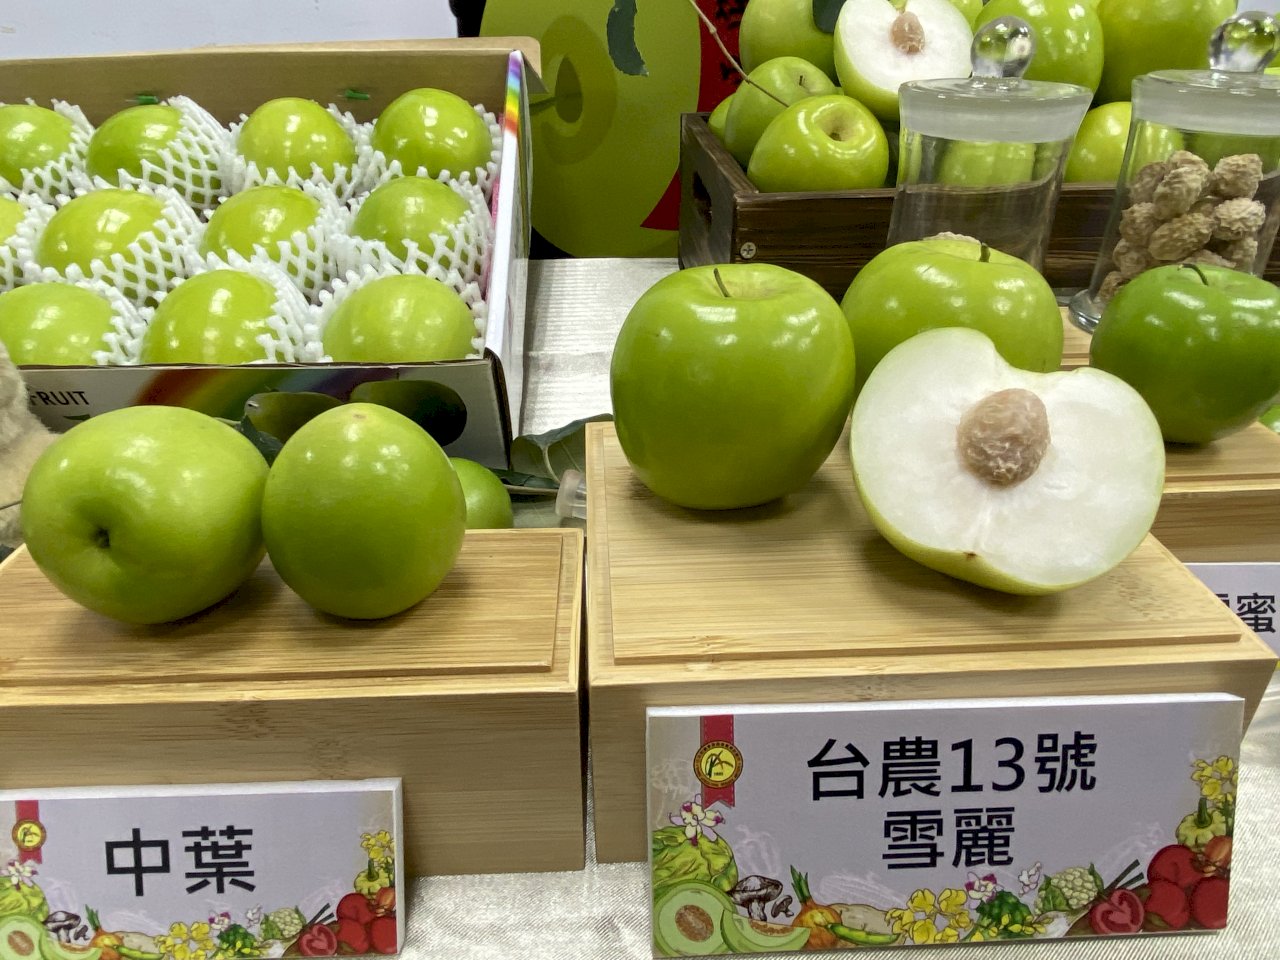 這種水果得出動警察防竊 迎春新品種「雪麗」棗來報到(影音)